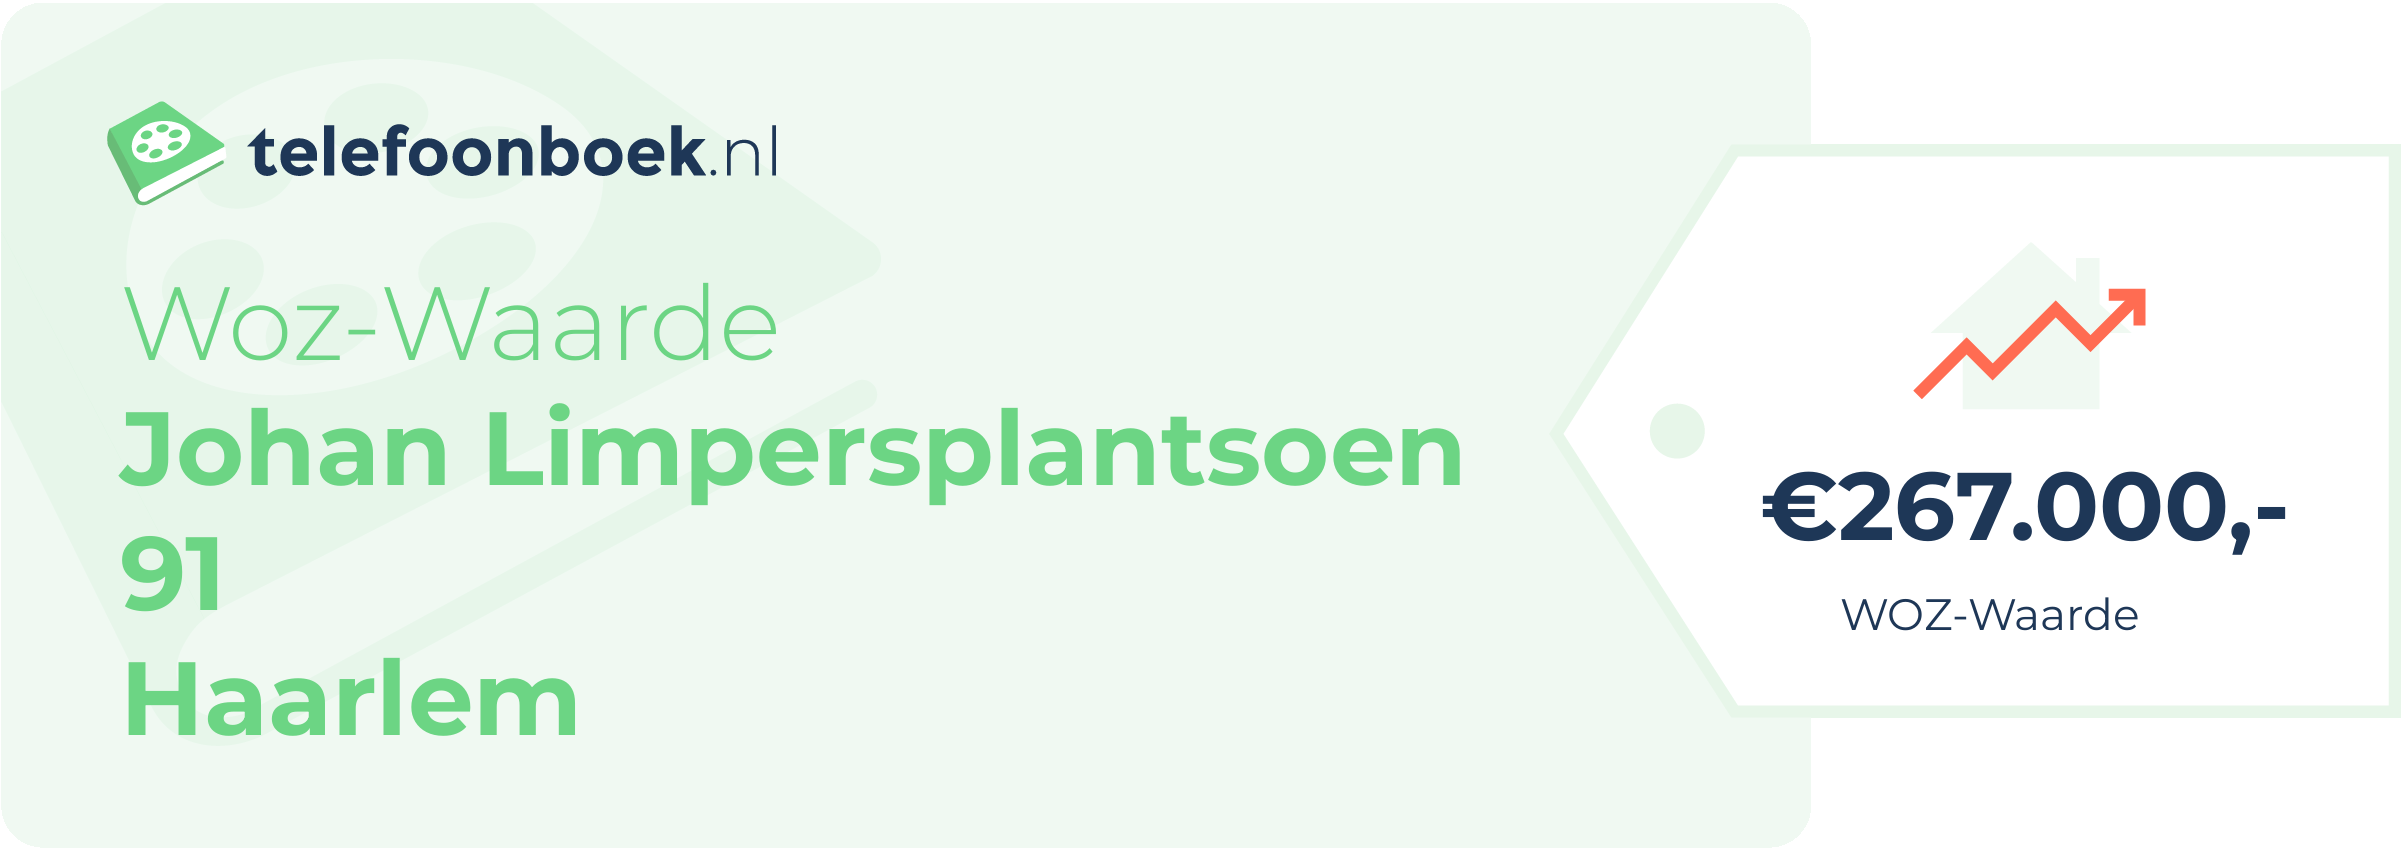 WOZ-waarde Johan Limpersplantsoen 91 Haarlem